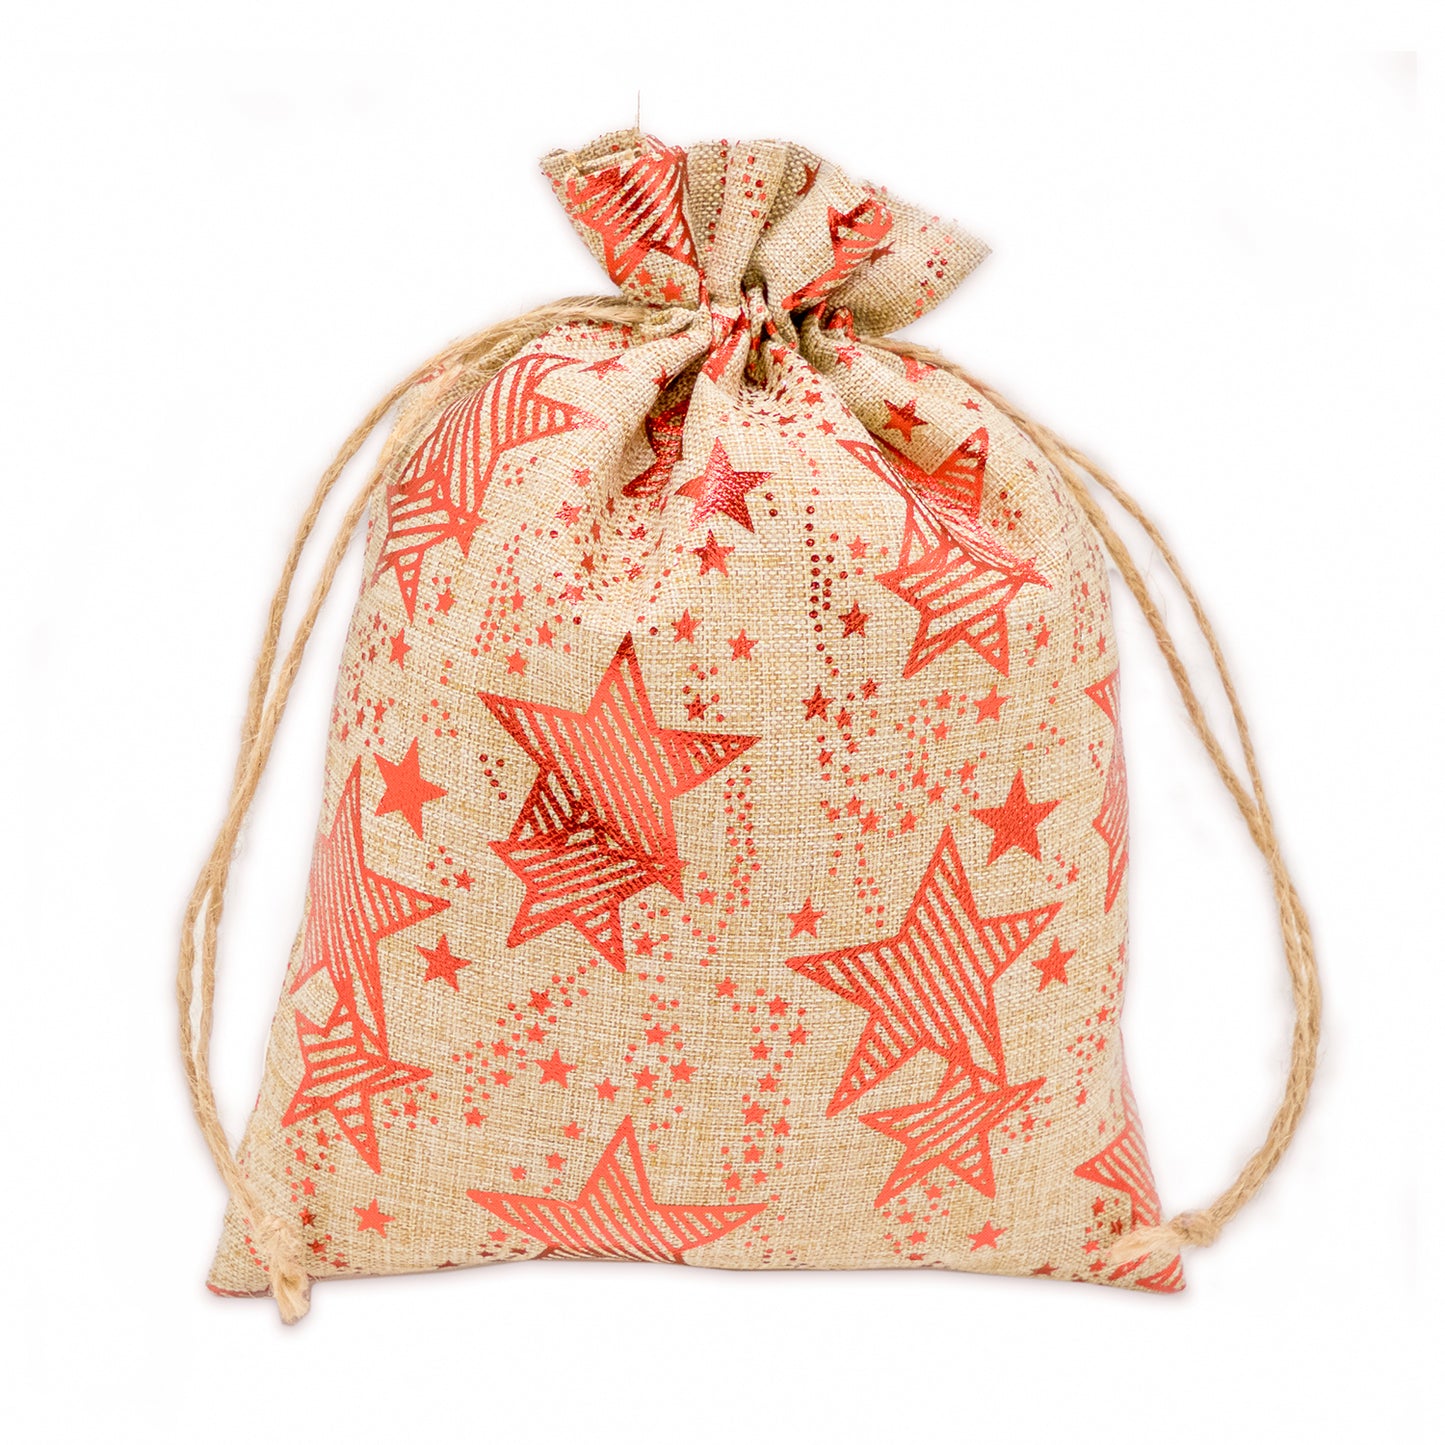 6" x 8" Jute Burlap Red Star Drawstring Gift Bags